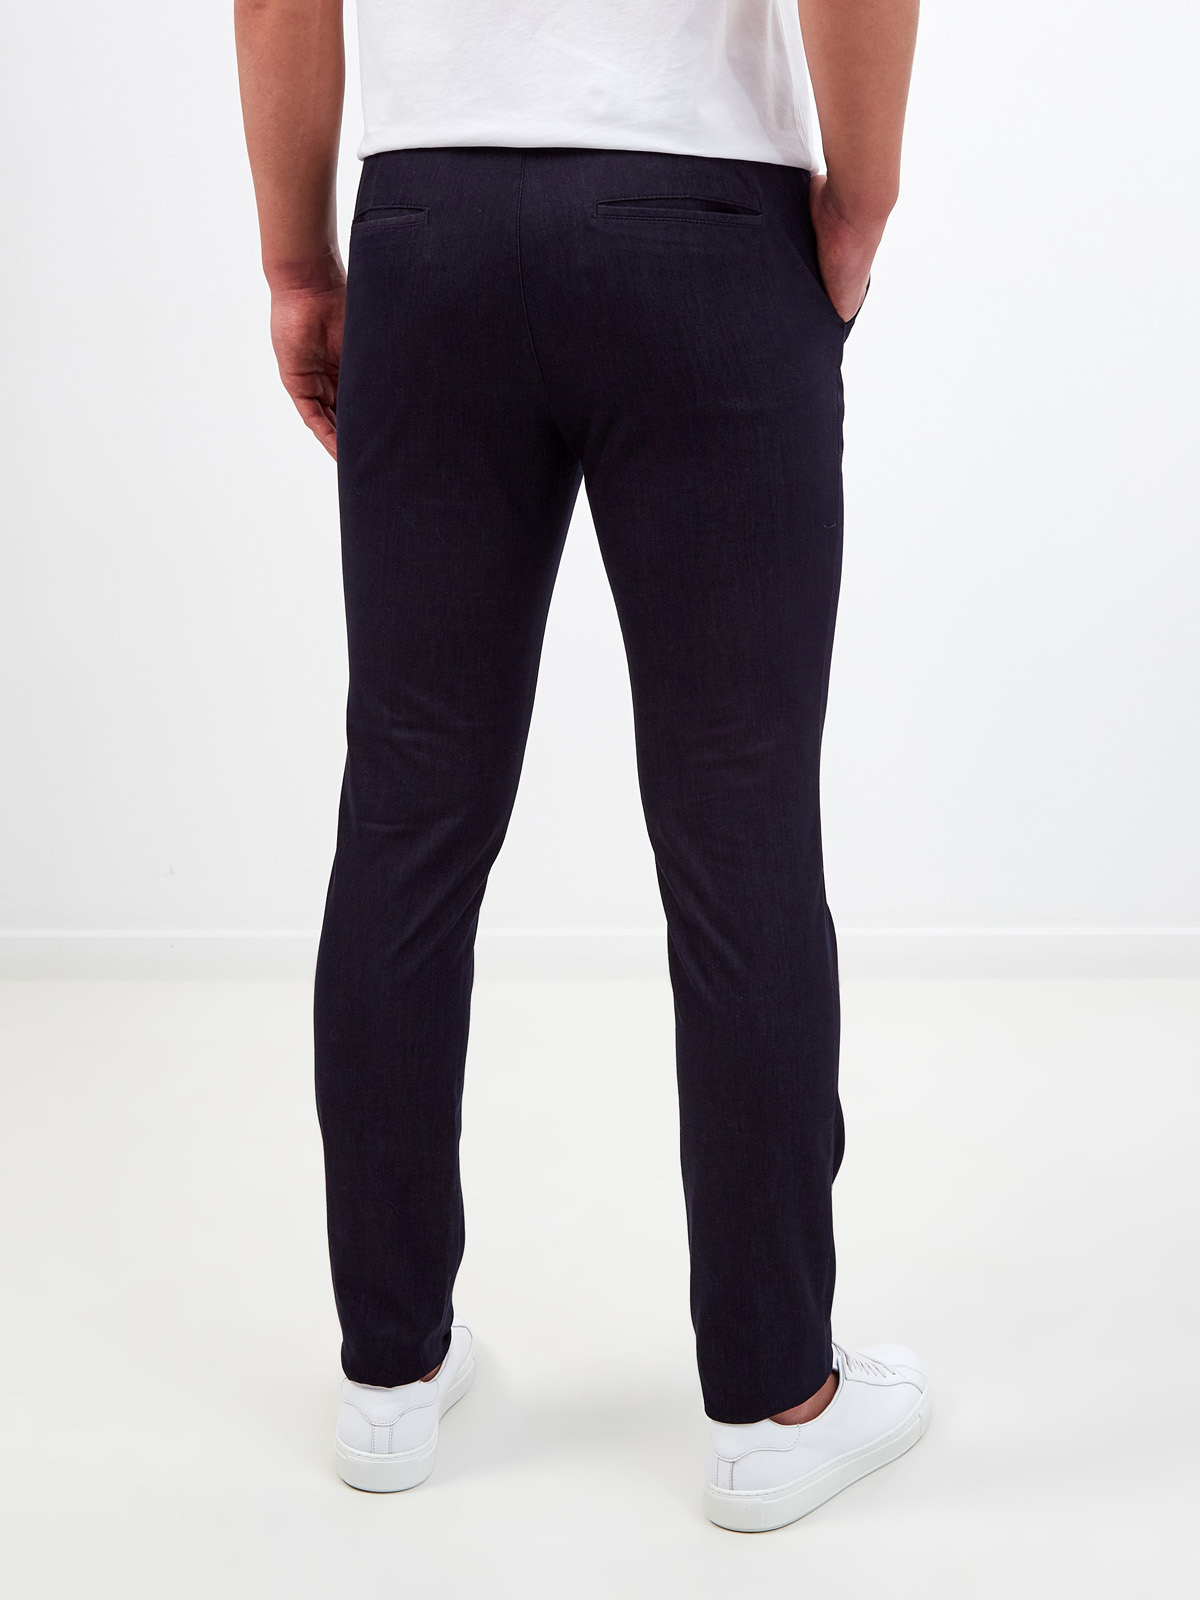 Легкие брюки в стиле casual с поясом на кулиске CUDGI, цвет черный, размер M;L;XL;2XL;4XL;5XL;S - фото 4